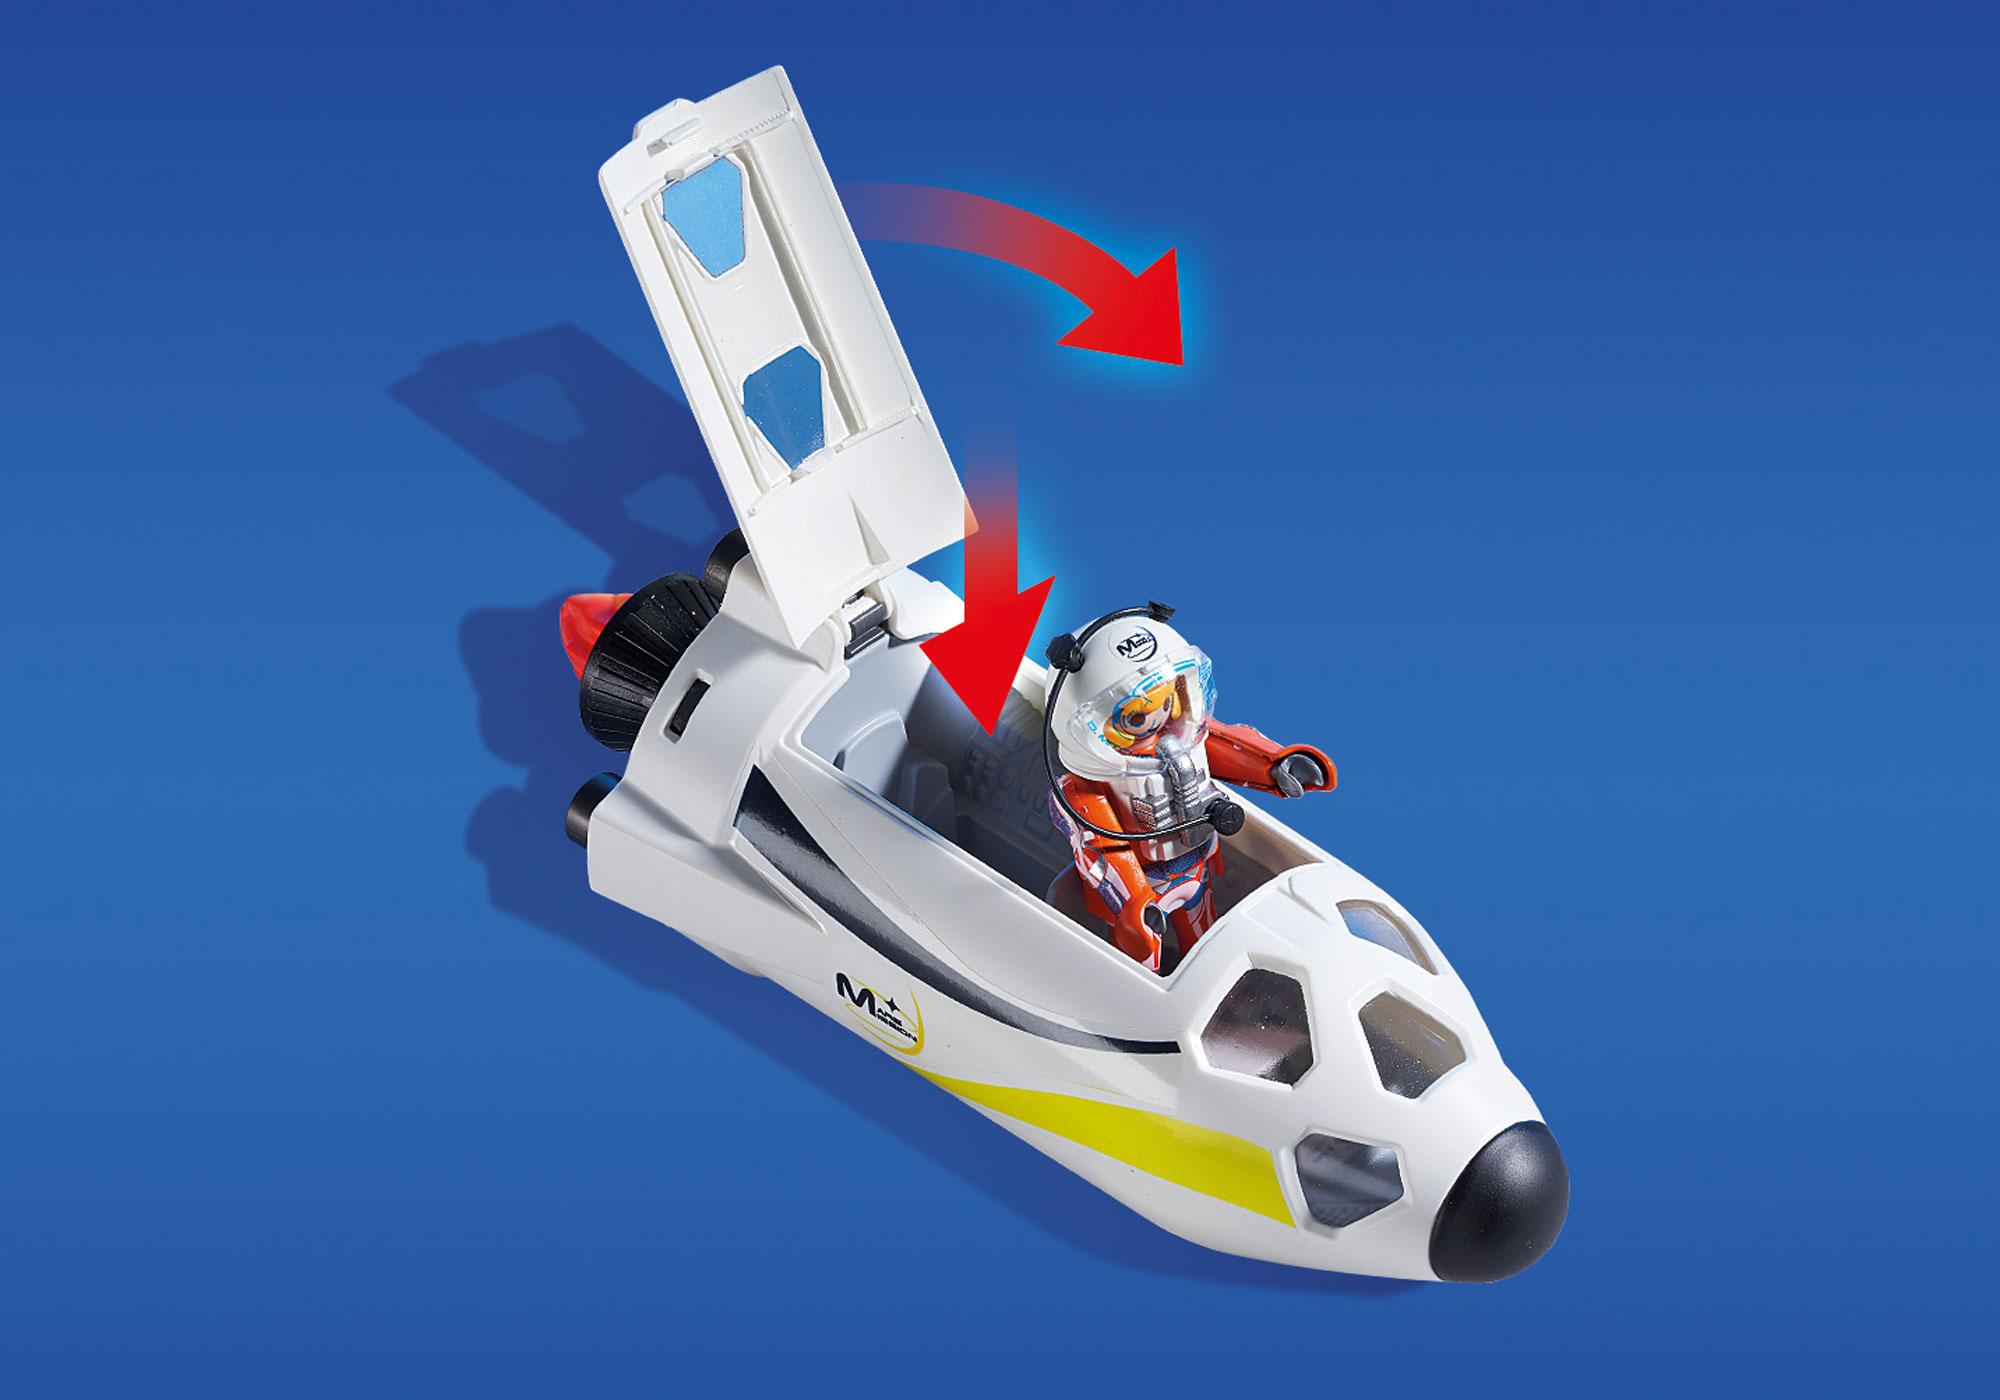 ② Playmobil: Magnifique fusée spatiale avec sons et lumière — Jouets